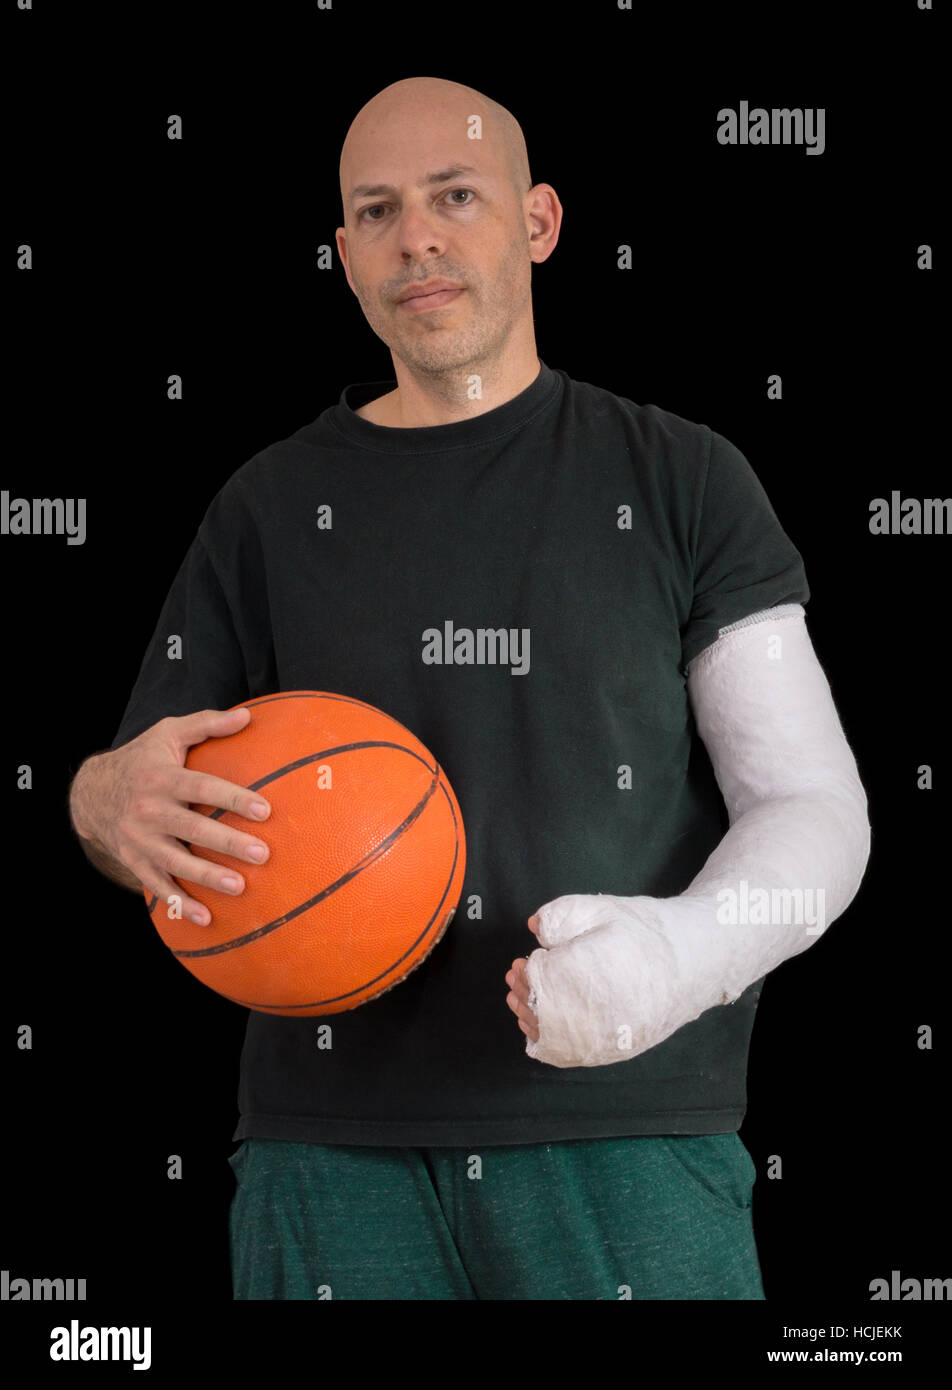 Junger Mann Sport eine helle weiße Gipsarm, hält einen Basketball nach dem Bruch seines Handgelenks bei einem Basketball-Spiel Sturz, isoliert auf schwarz Stockfoto